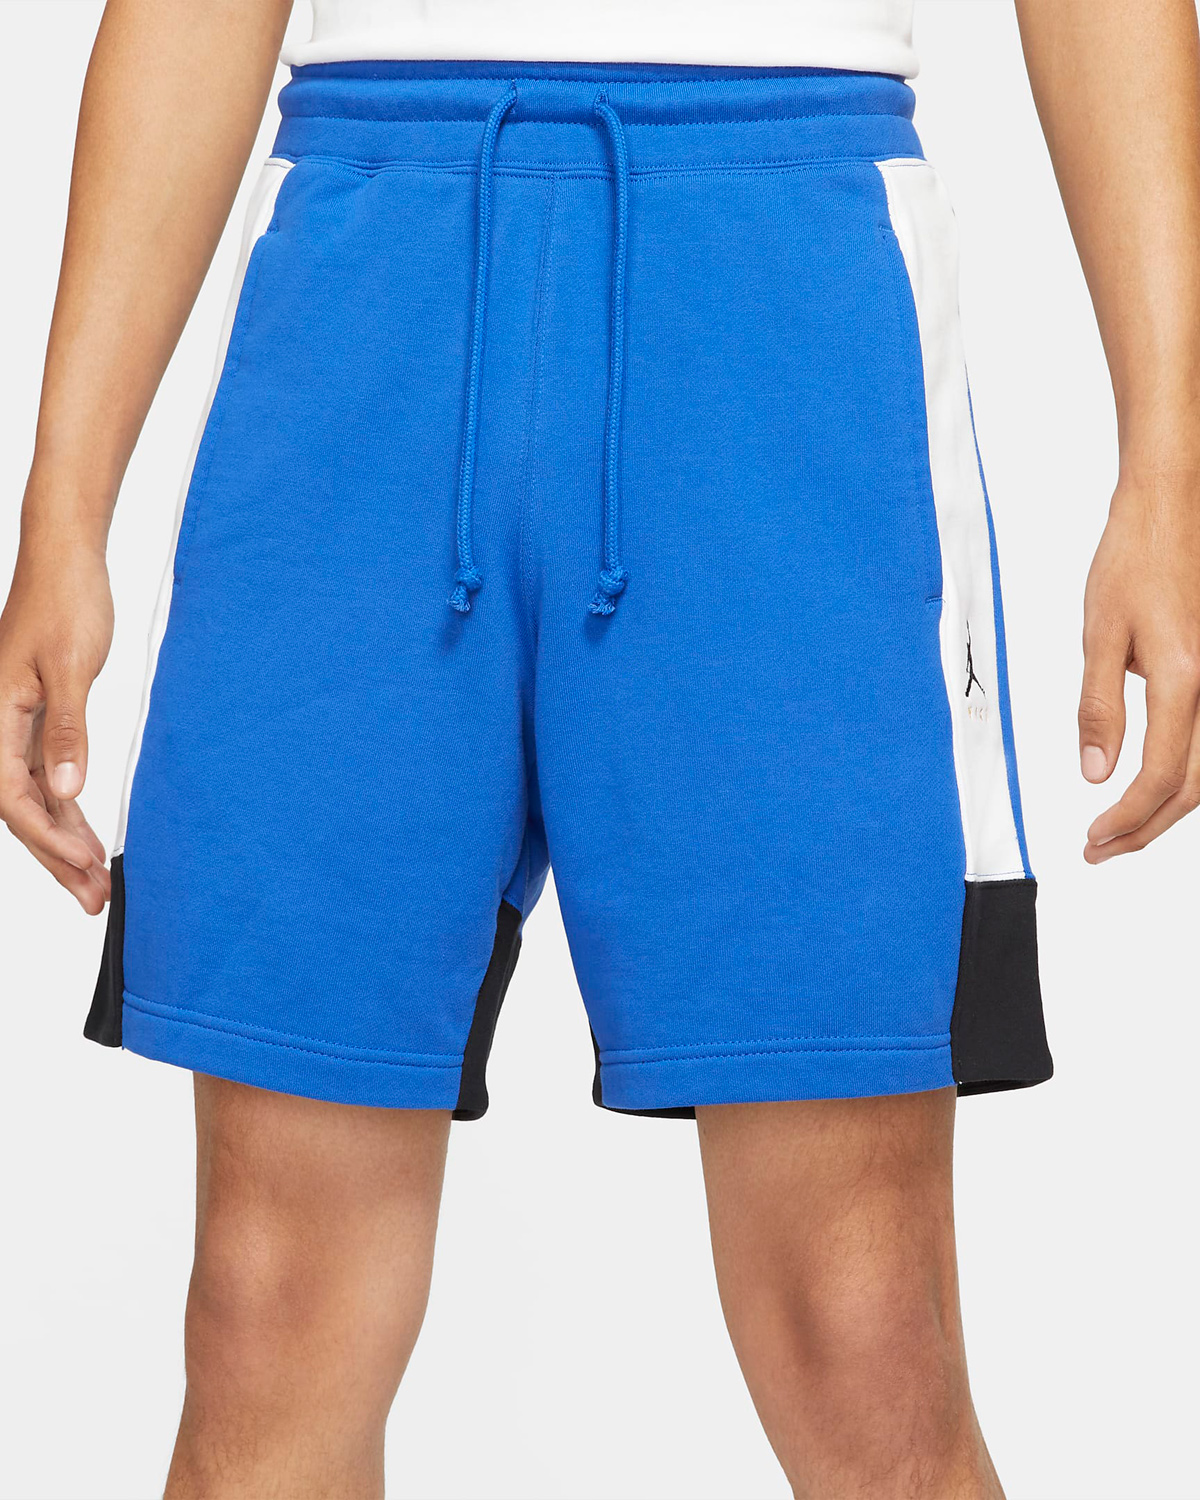 Air Jordan 3 Racer Blue Fleece Shorts Outfit